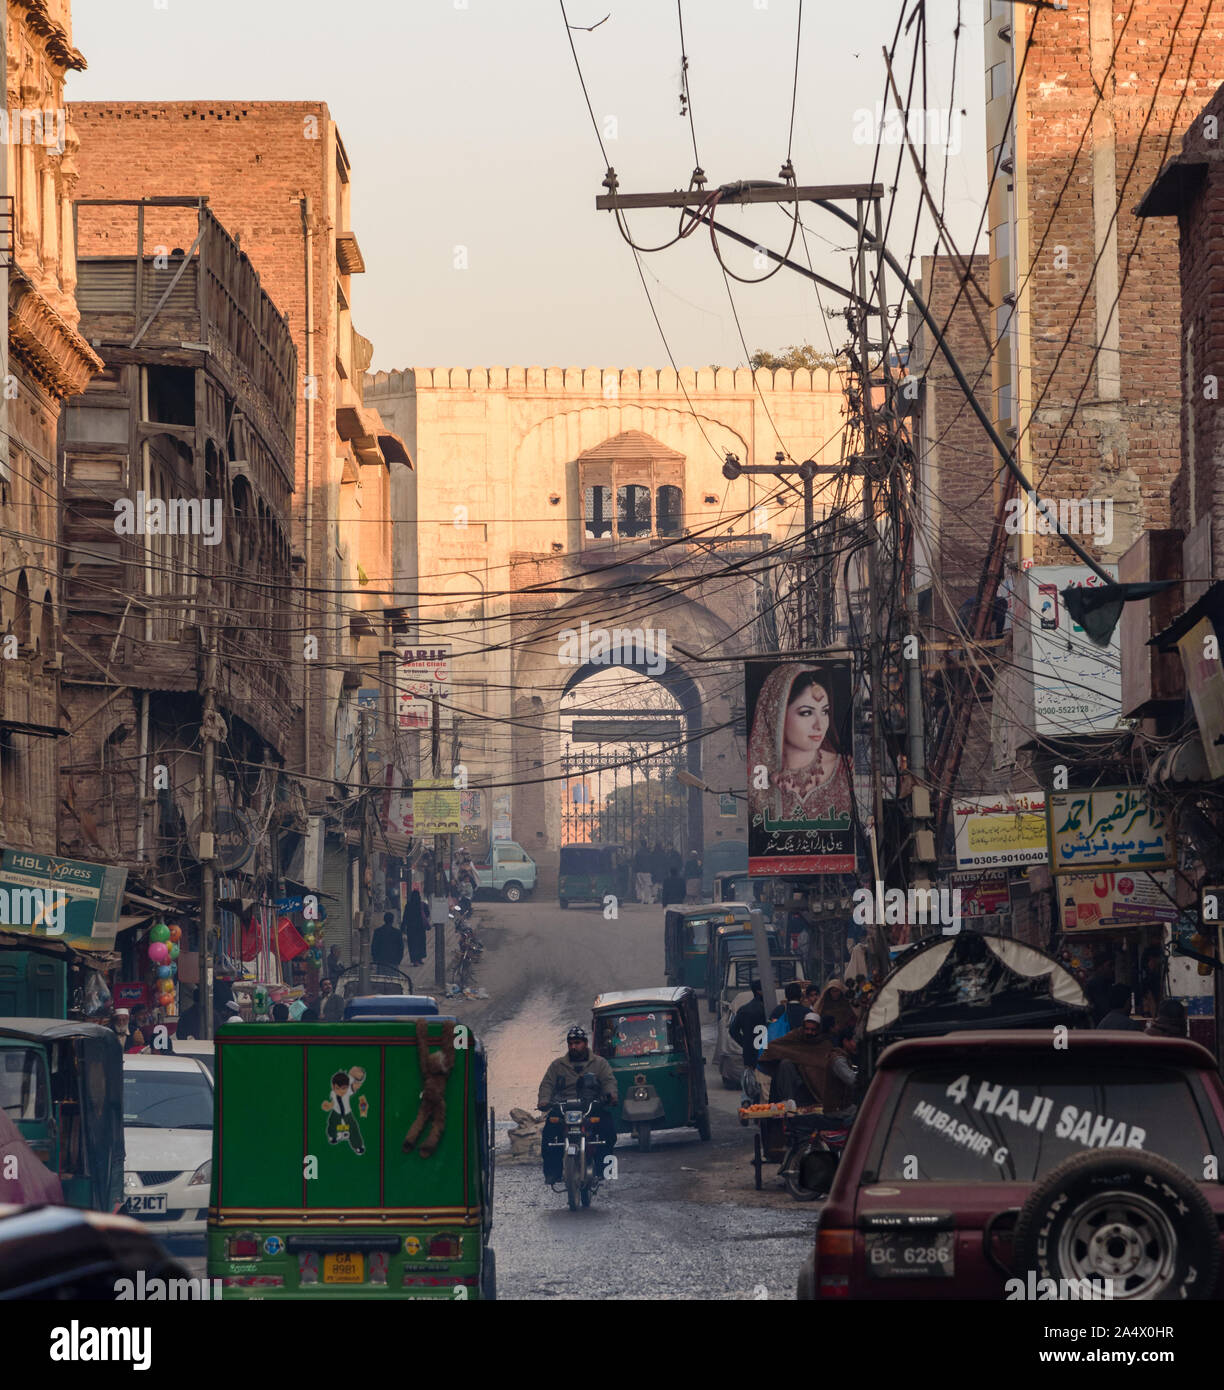 PESHAWAR, Pakistan - 01 janvier 2015 : La porte de la ville fortifiée vue de Bazar Kalan à Peshawar, ville du Pakistan. Banque D'Images